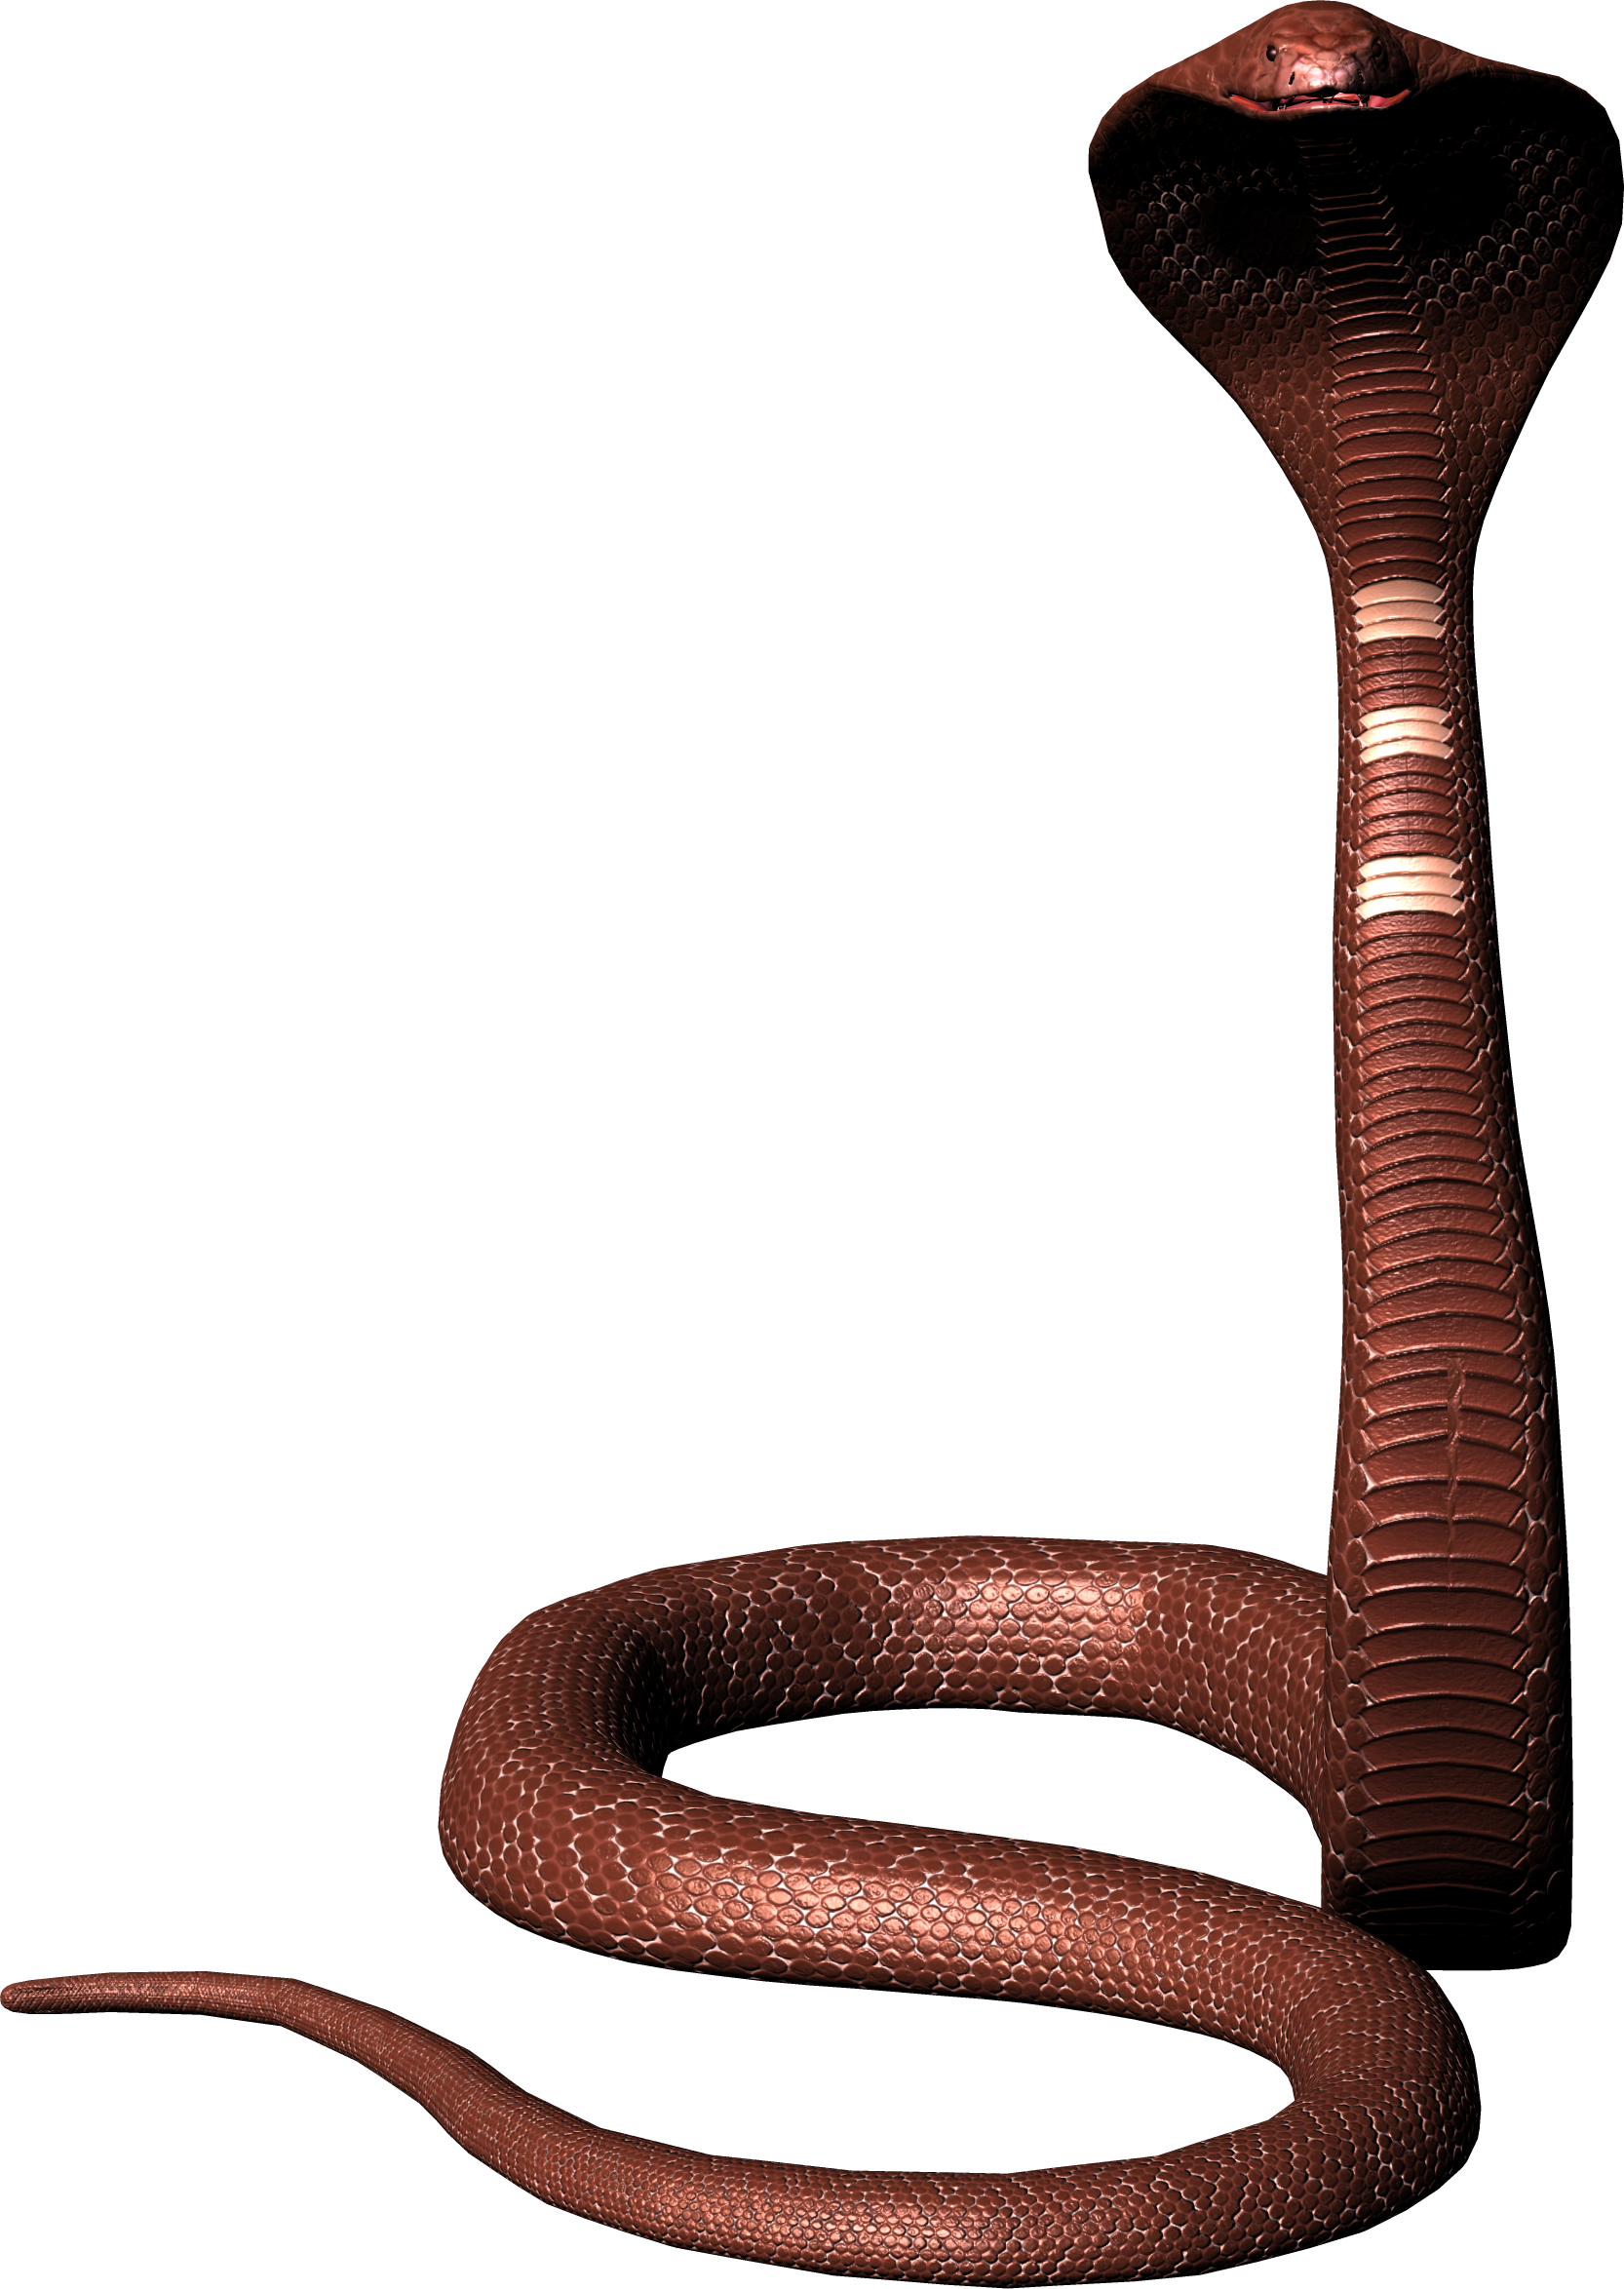 Viper Snake PNG Image Background